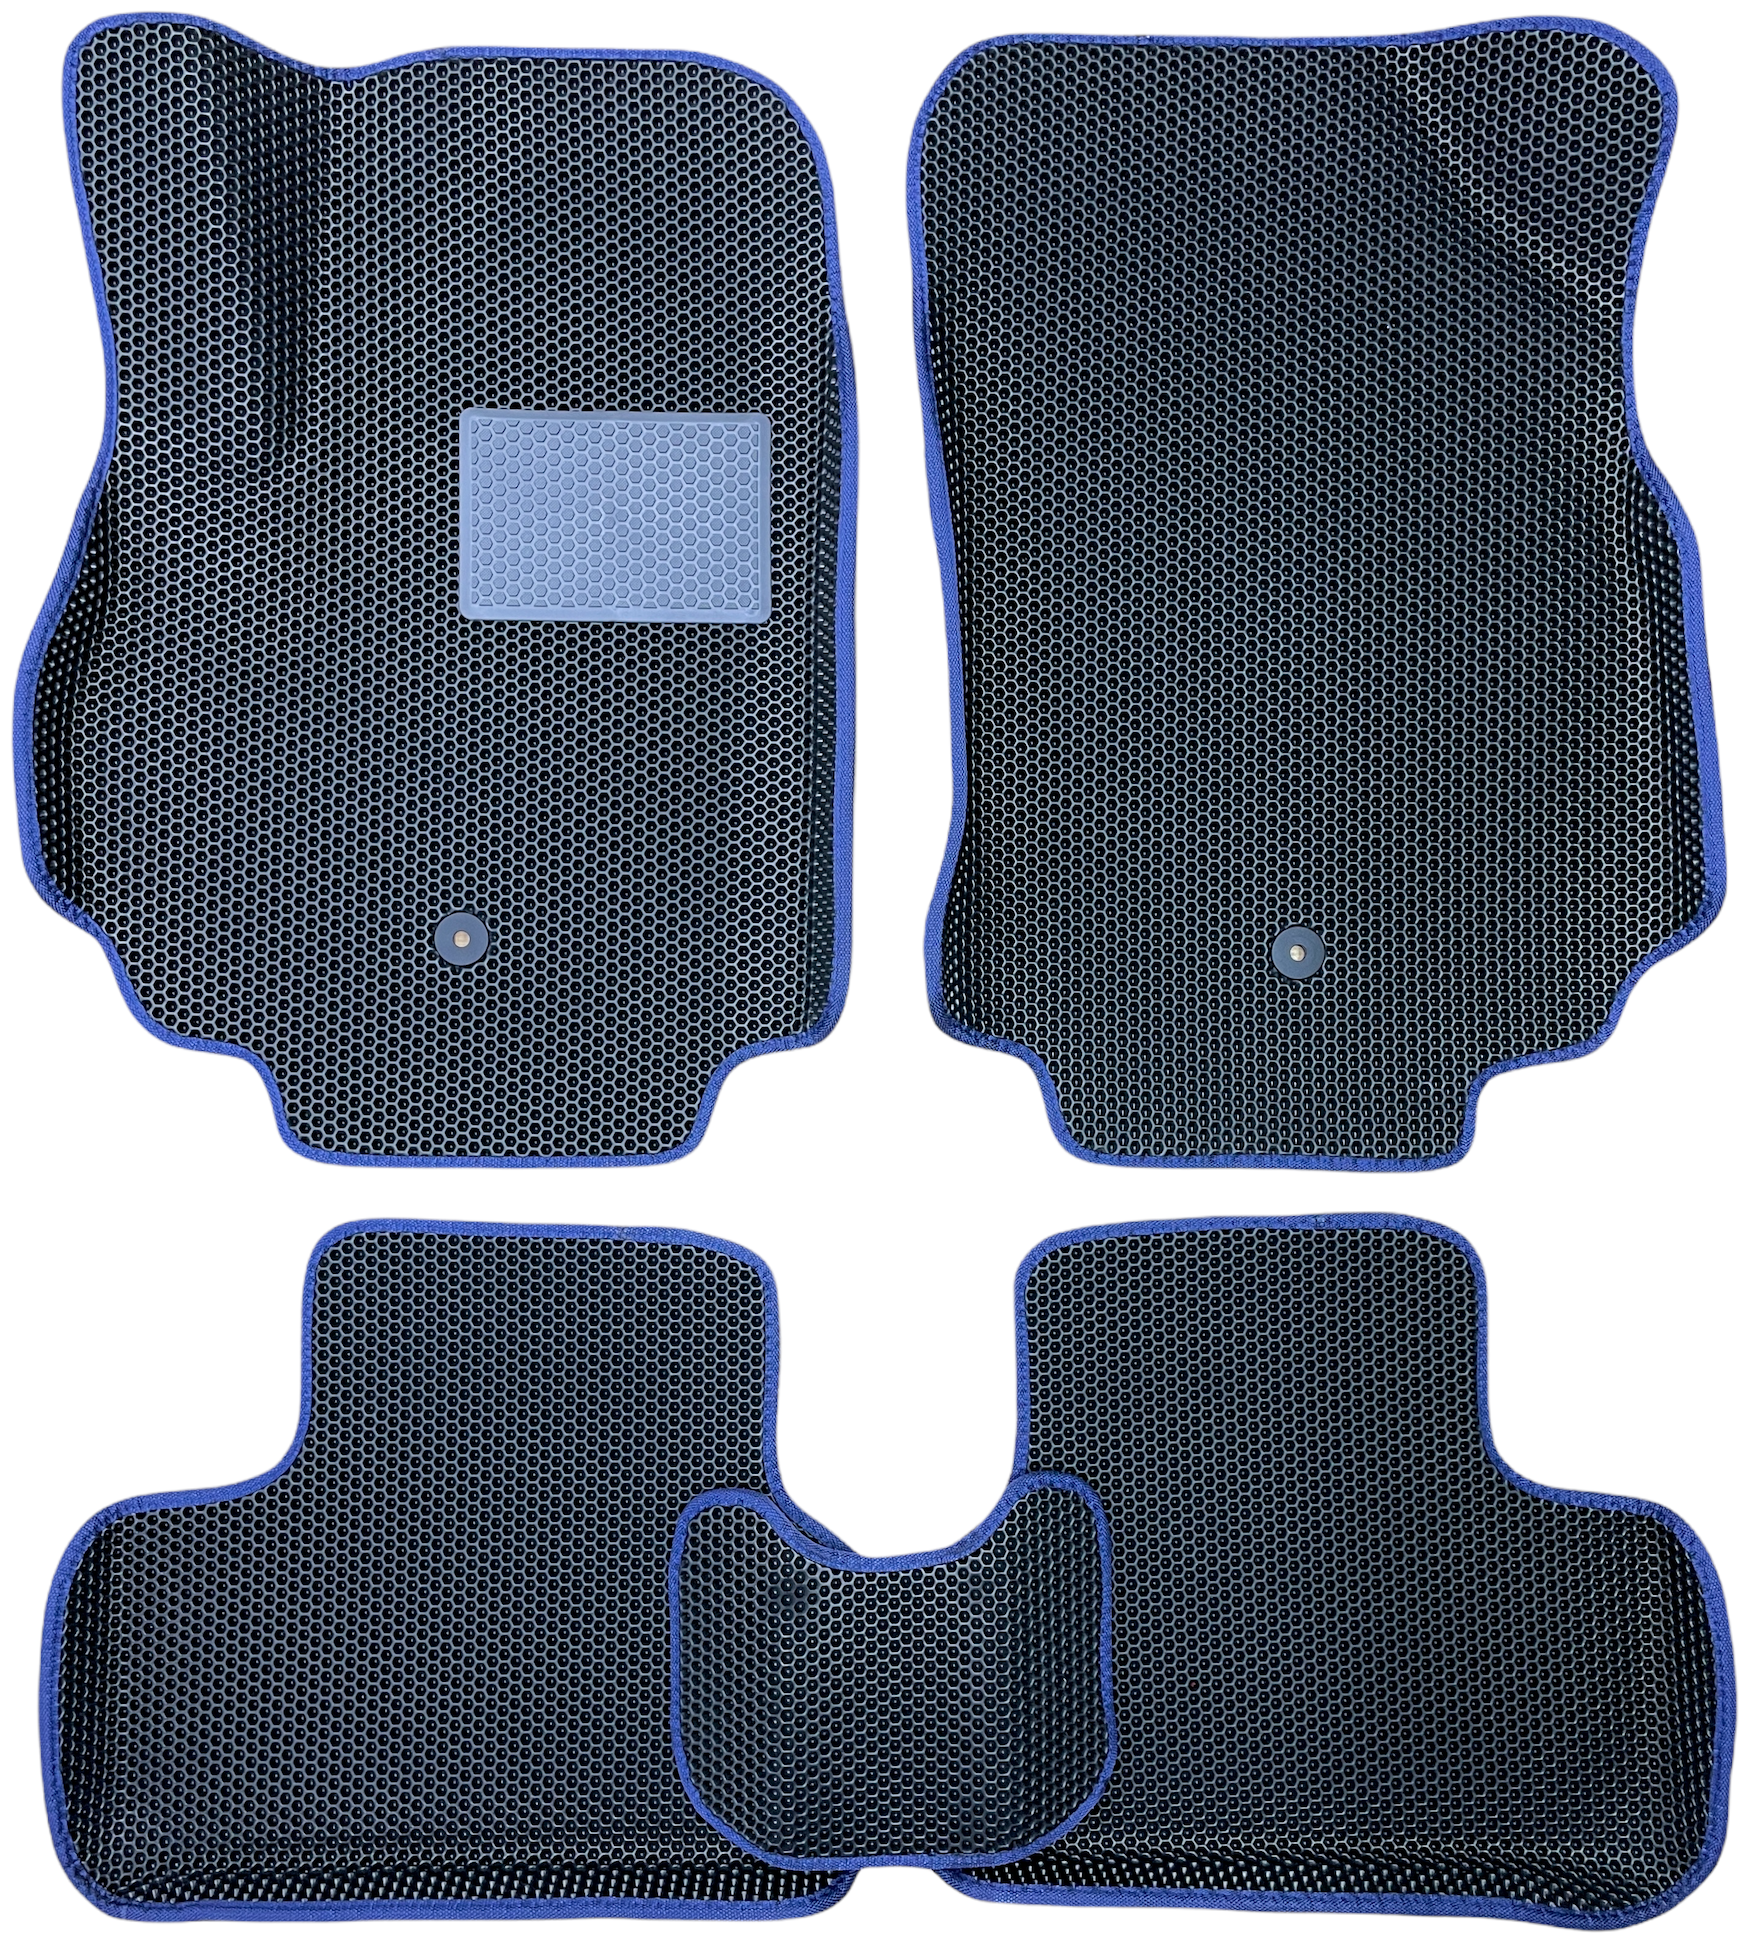 Автомобильные коврики ЕВА / EVA с бортами 3д / 3D для Great Wall Hover H2, H3, H5 2010-н. в. / Грейт вол ховер черный(сота)-синий / резин подпятник